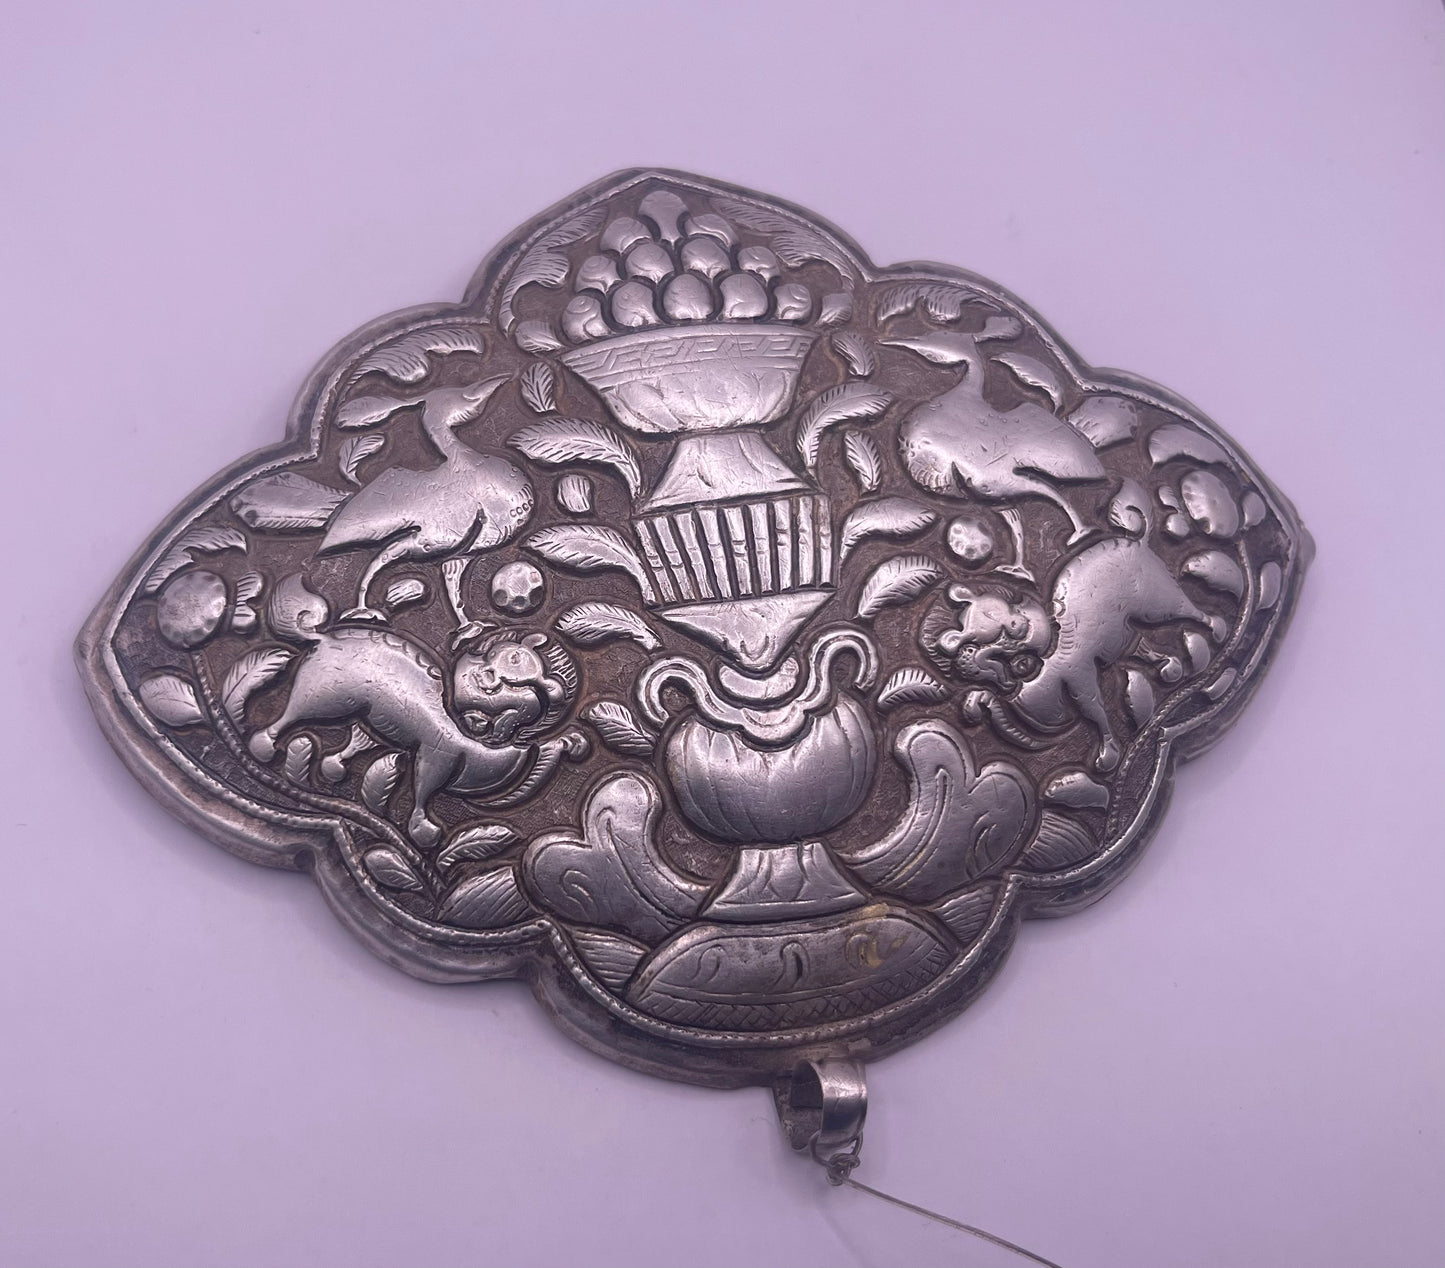 An antique Tibetan silver belt buckle